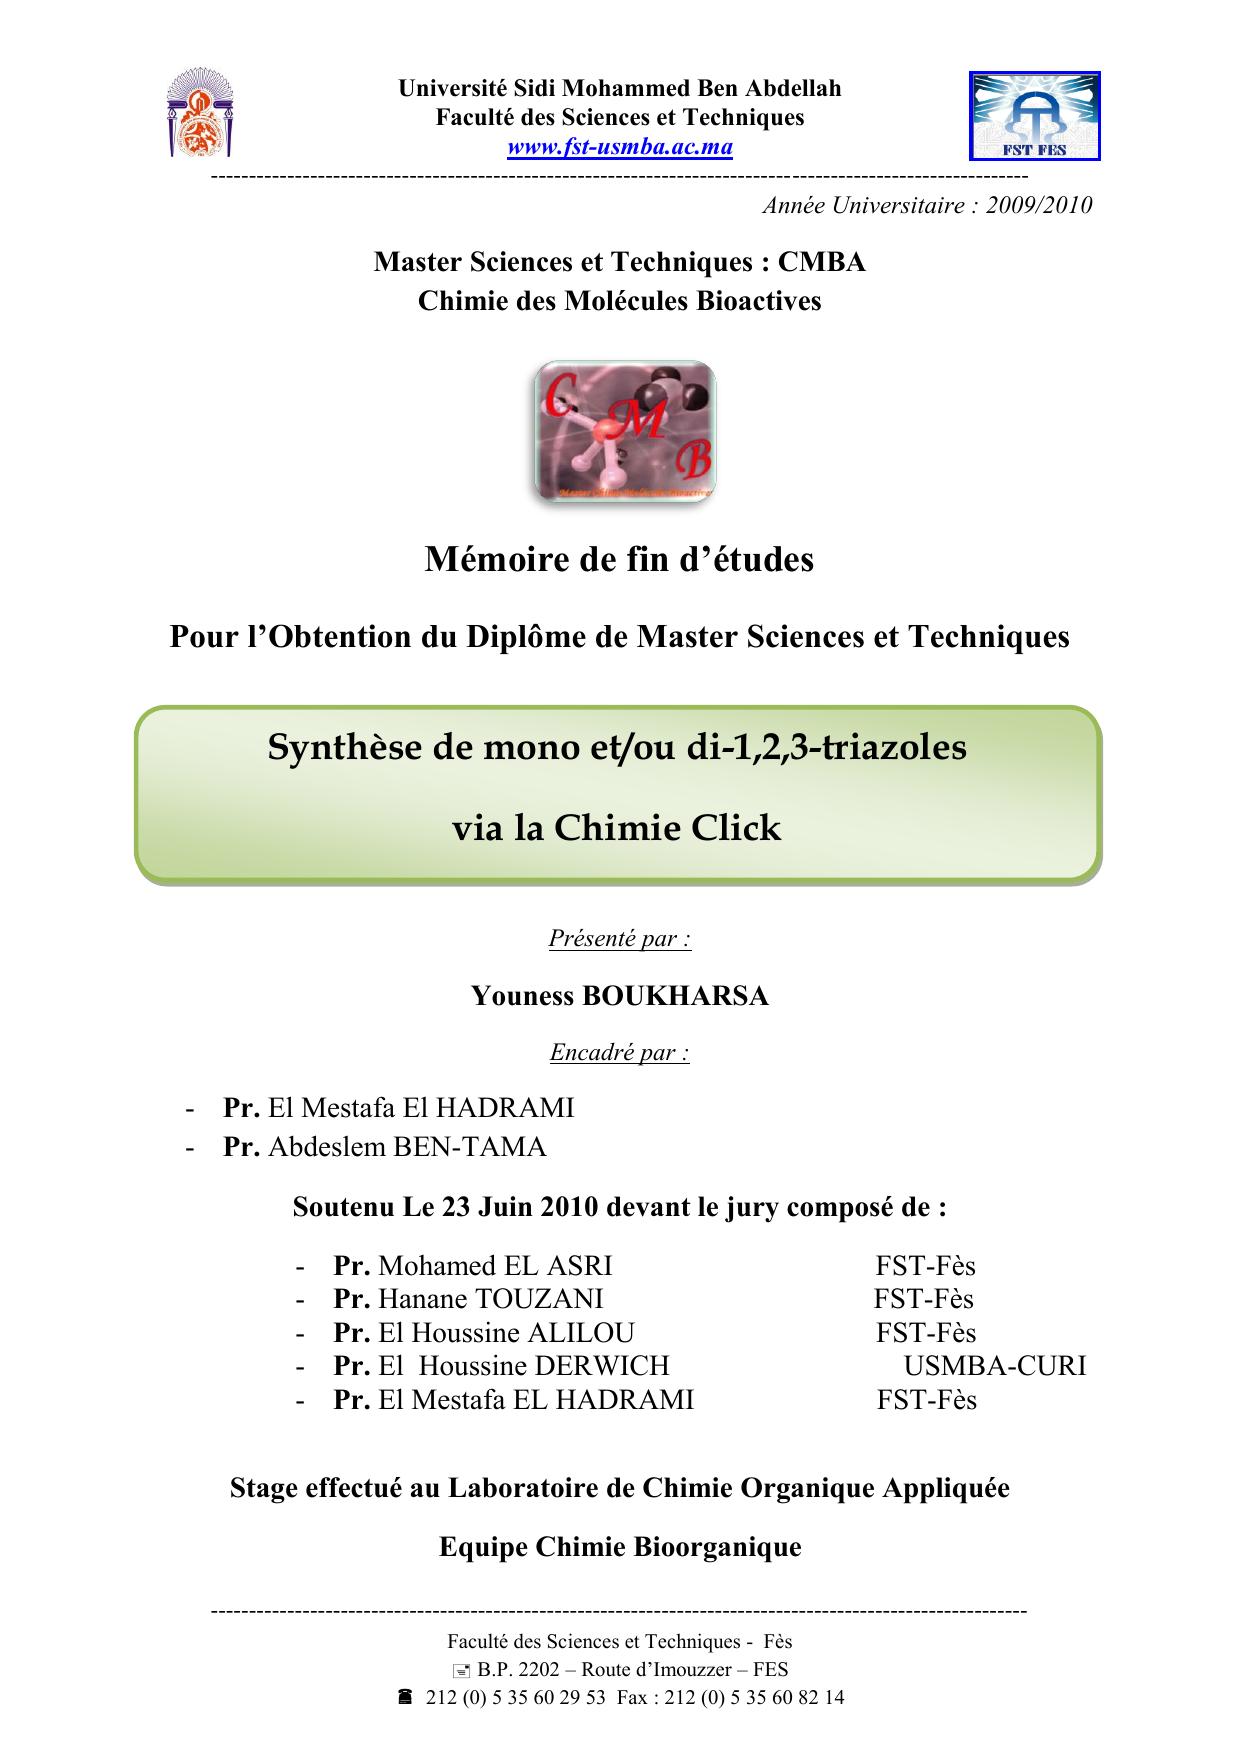 Synthèse de mono et/ou di-1,2,3-triazoles via la Chimie Click